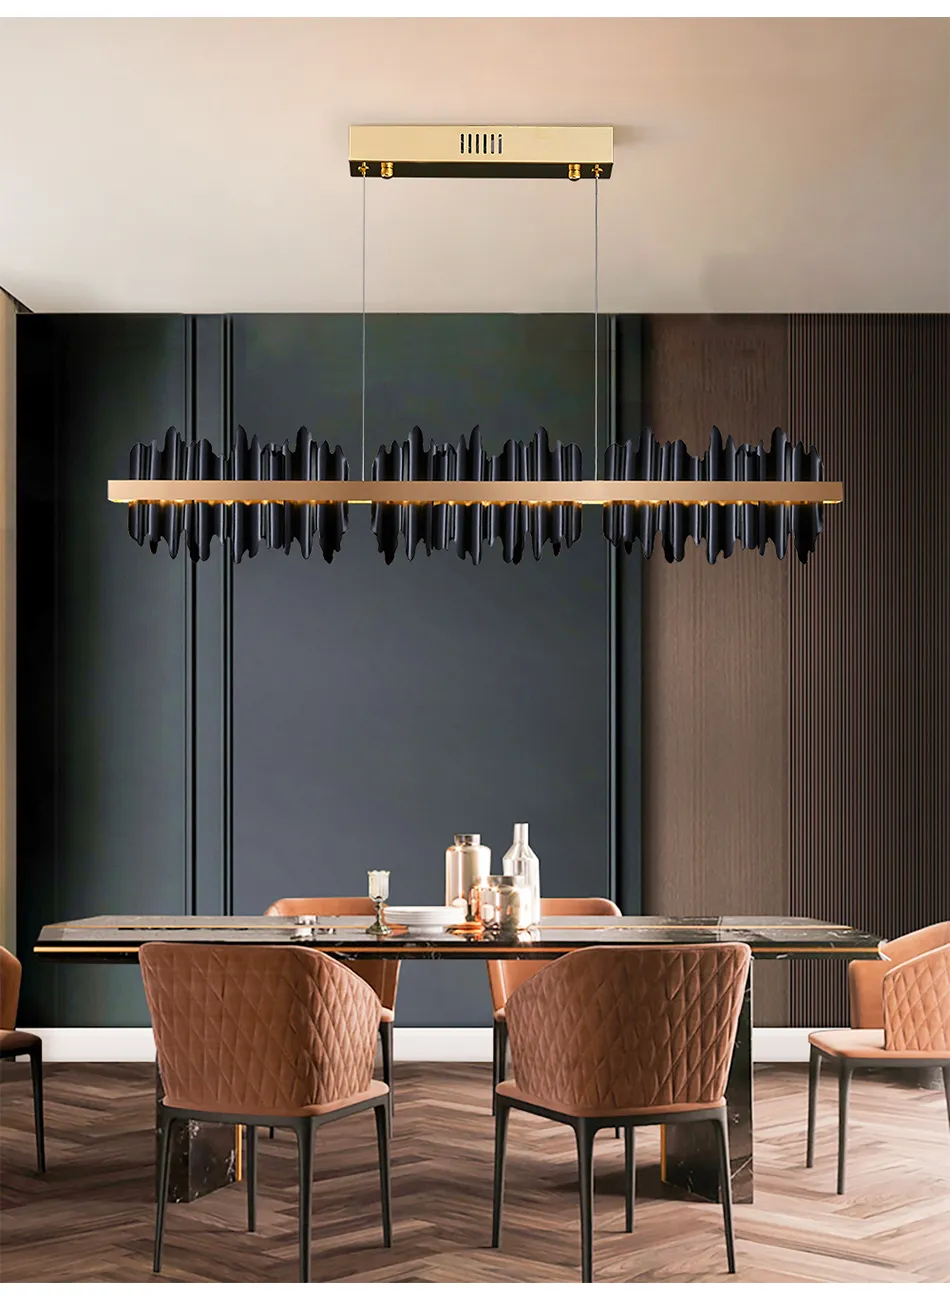 Siyah Yemek Odası Avize Dikdörtgen LED Ev Dekorasyon Işık Fikstür Modern Tasarım Bakır Mutfak Adası Asma lamba235v